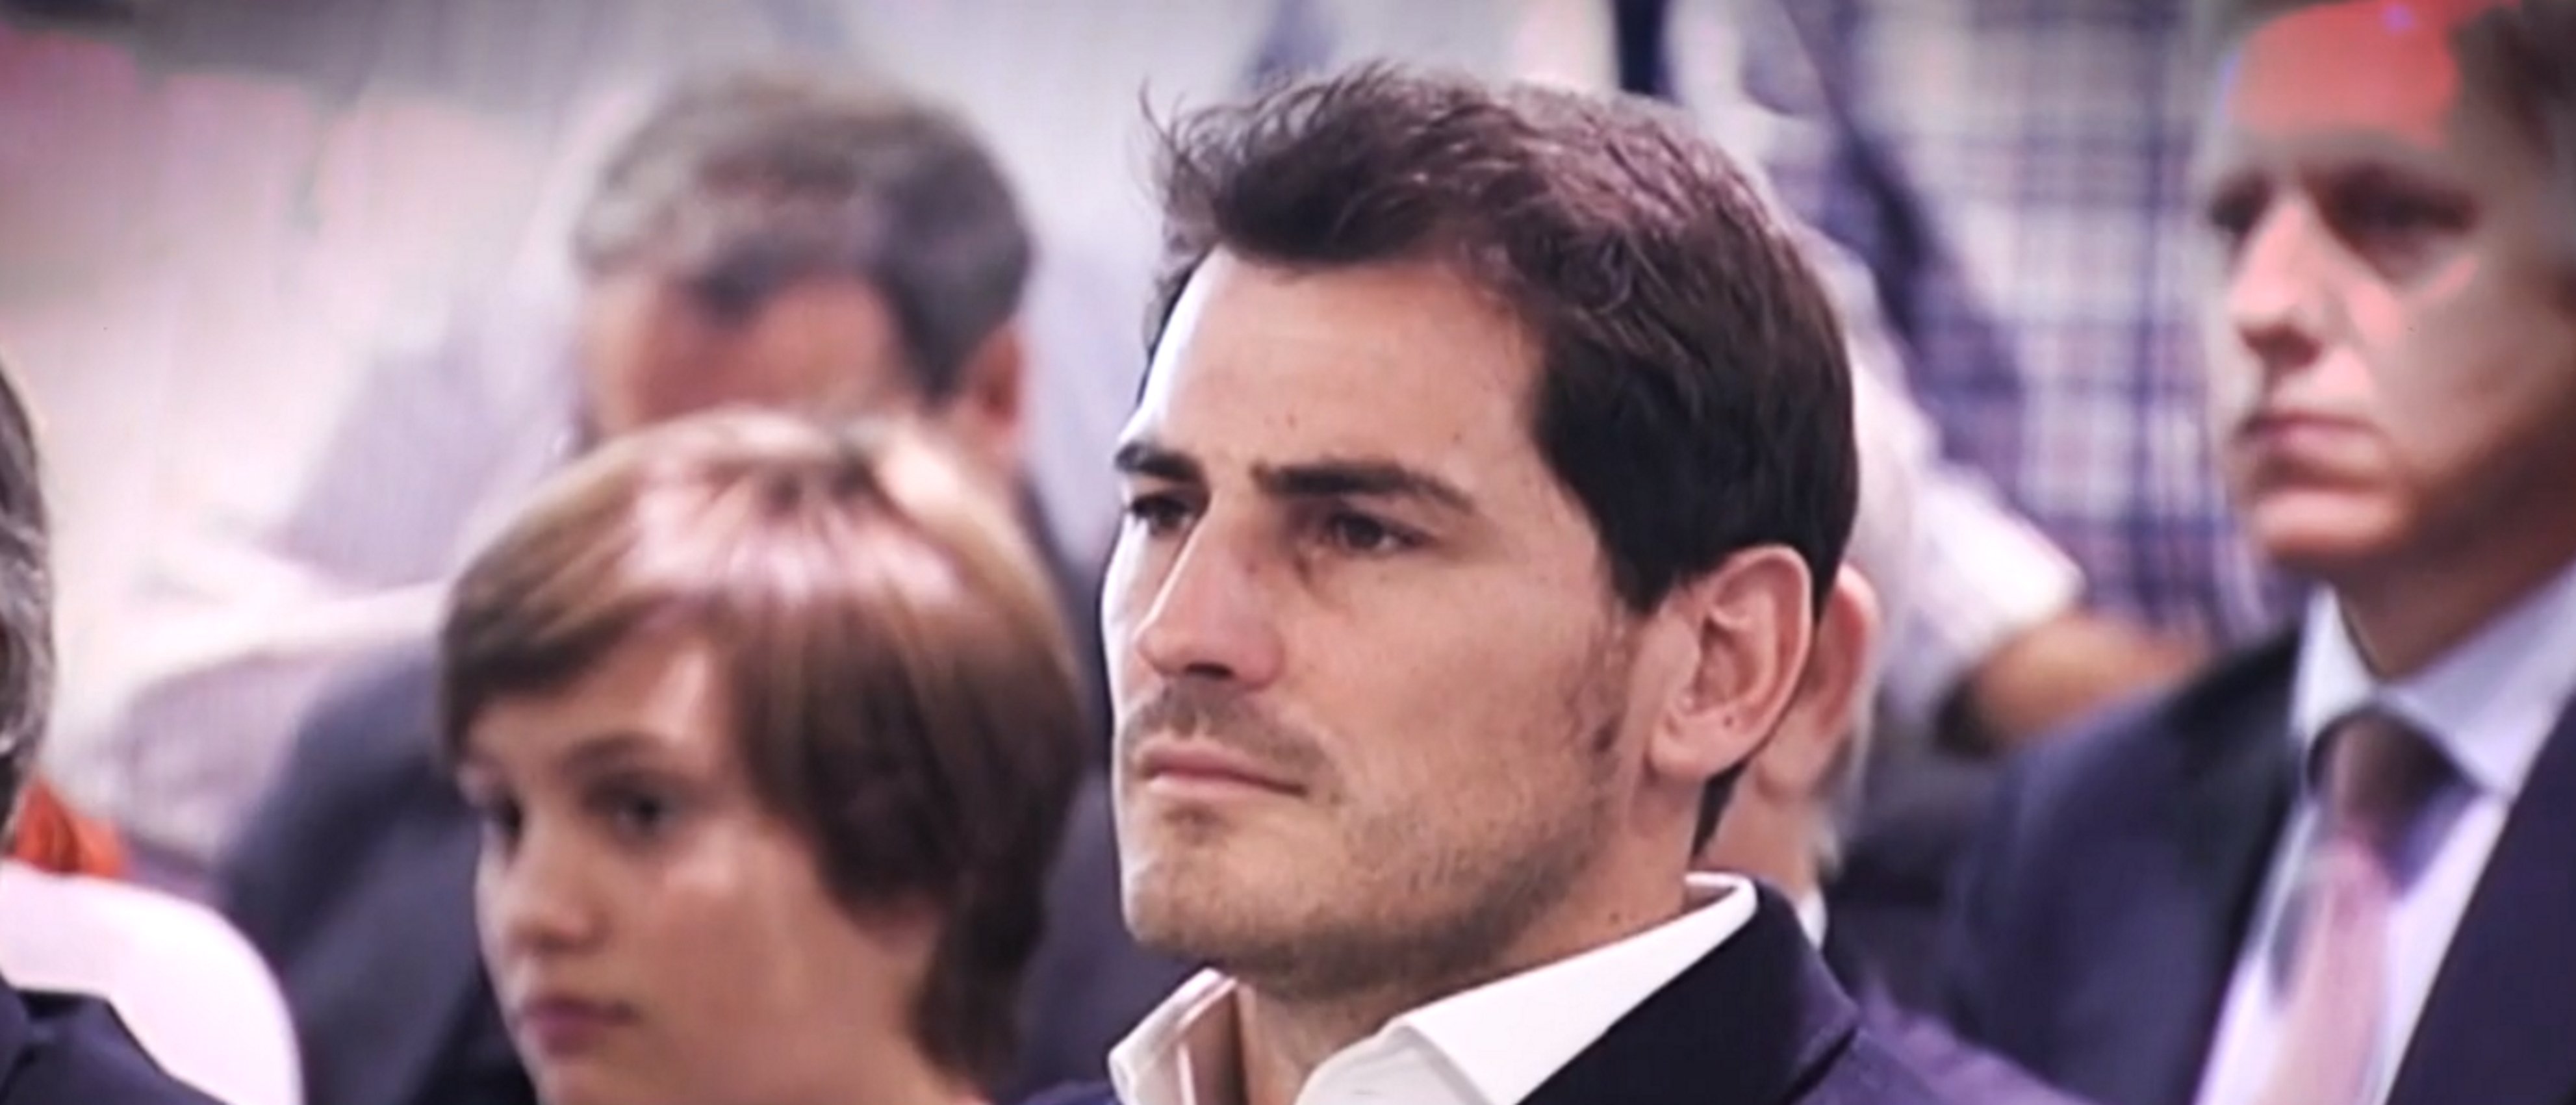 Iker Casillas y el alcohol: T5 destapa la cara oculta del "yerno de España"